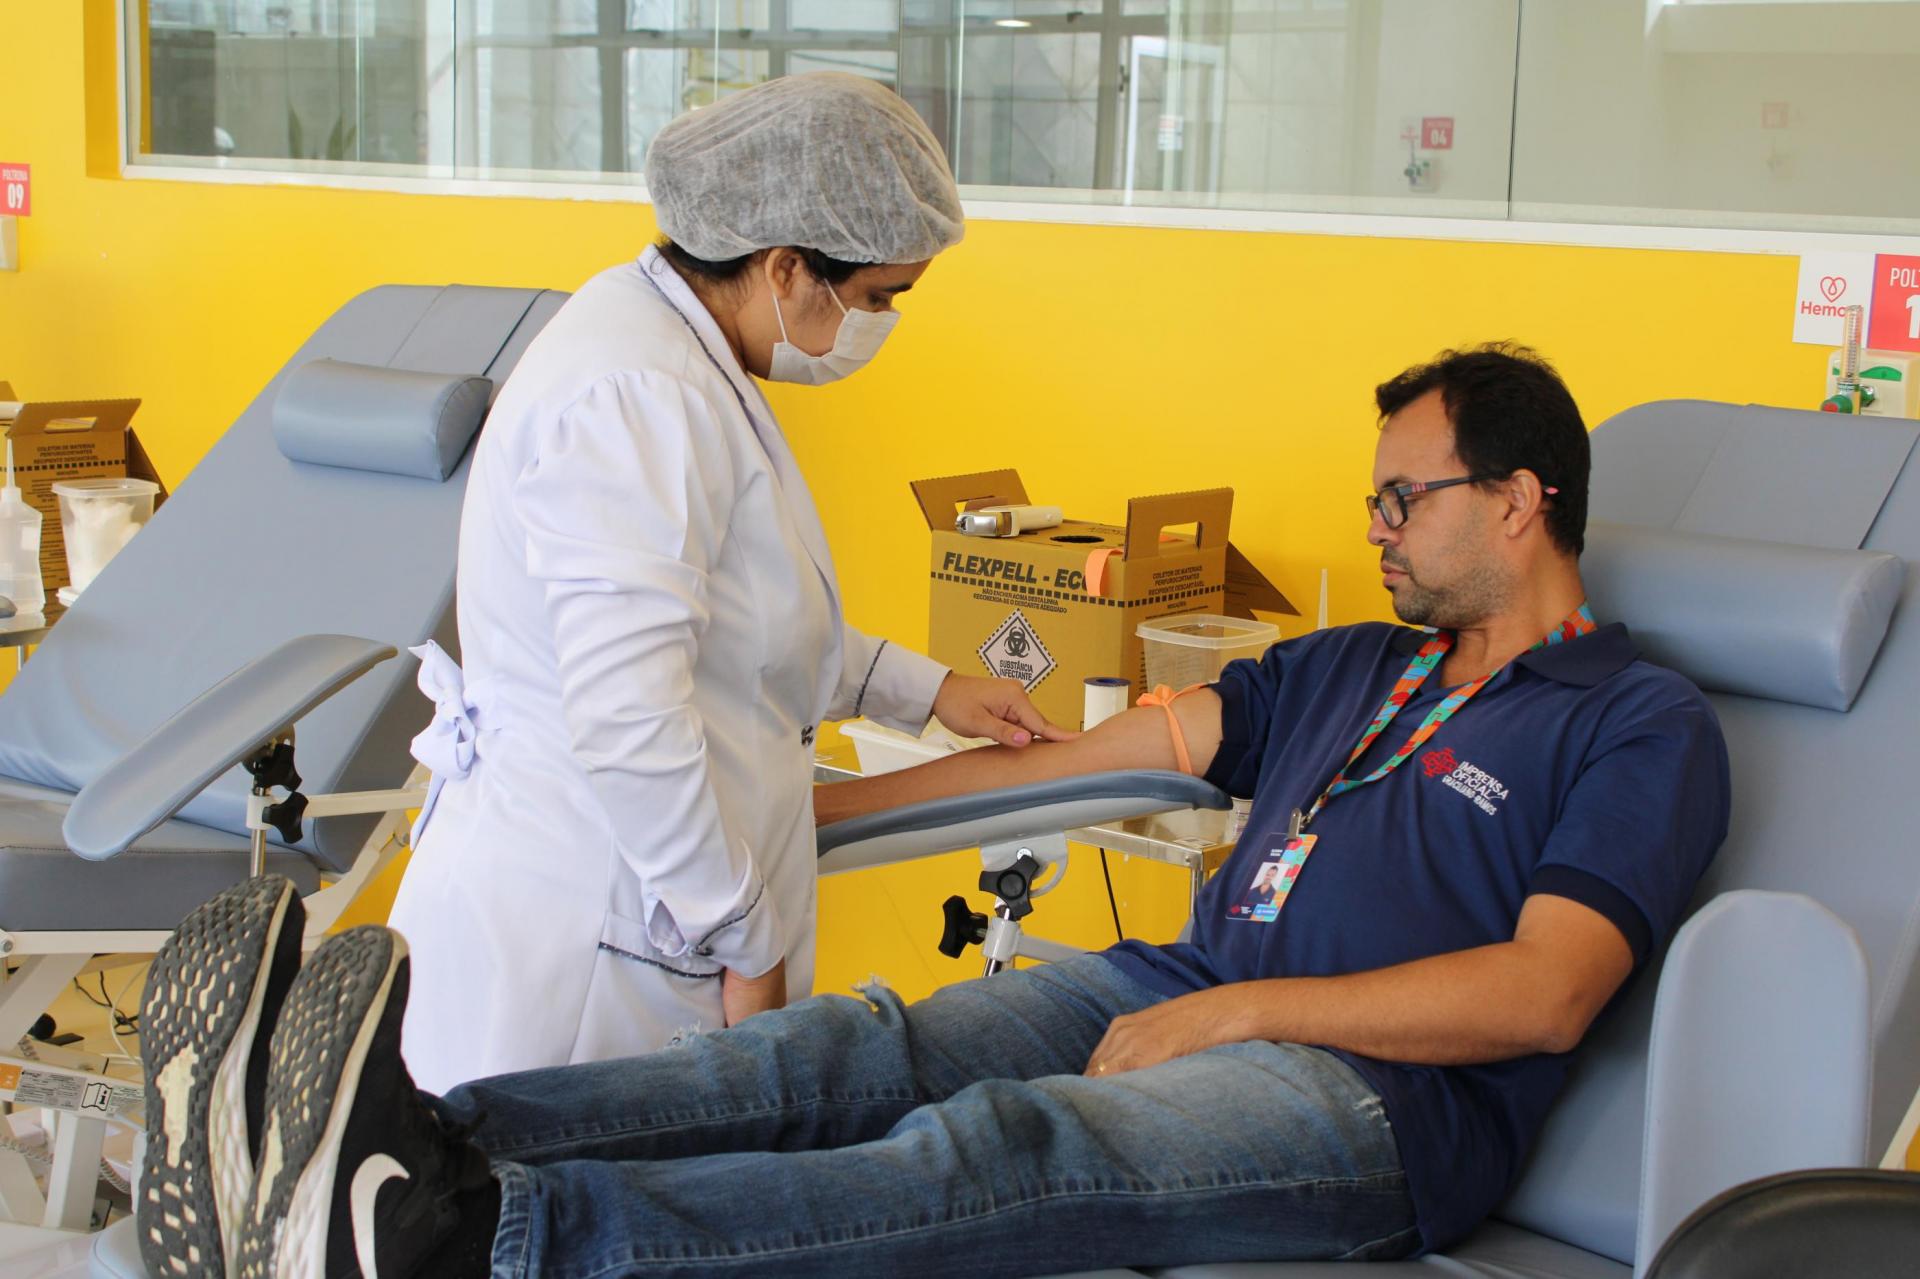 Imprensa Oficial Graciliano Ramos promove ação especial para doação de sangue em parceria com o Hemoal